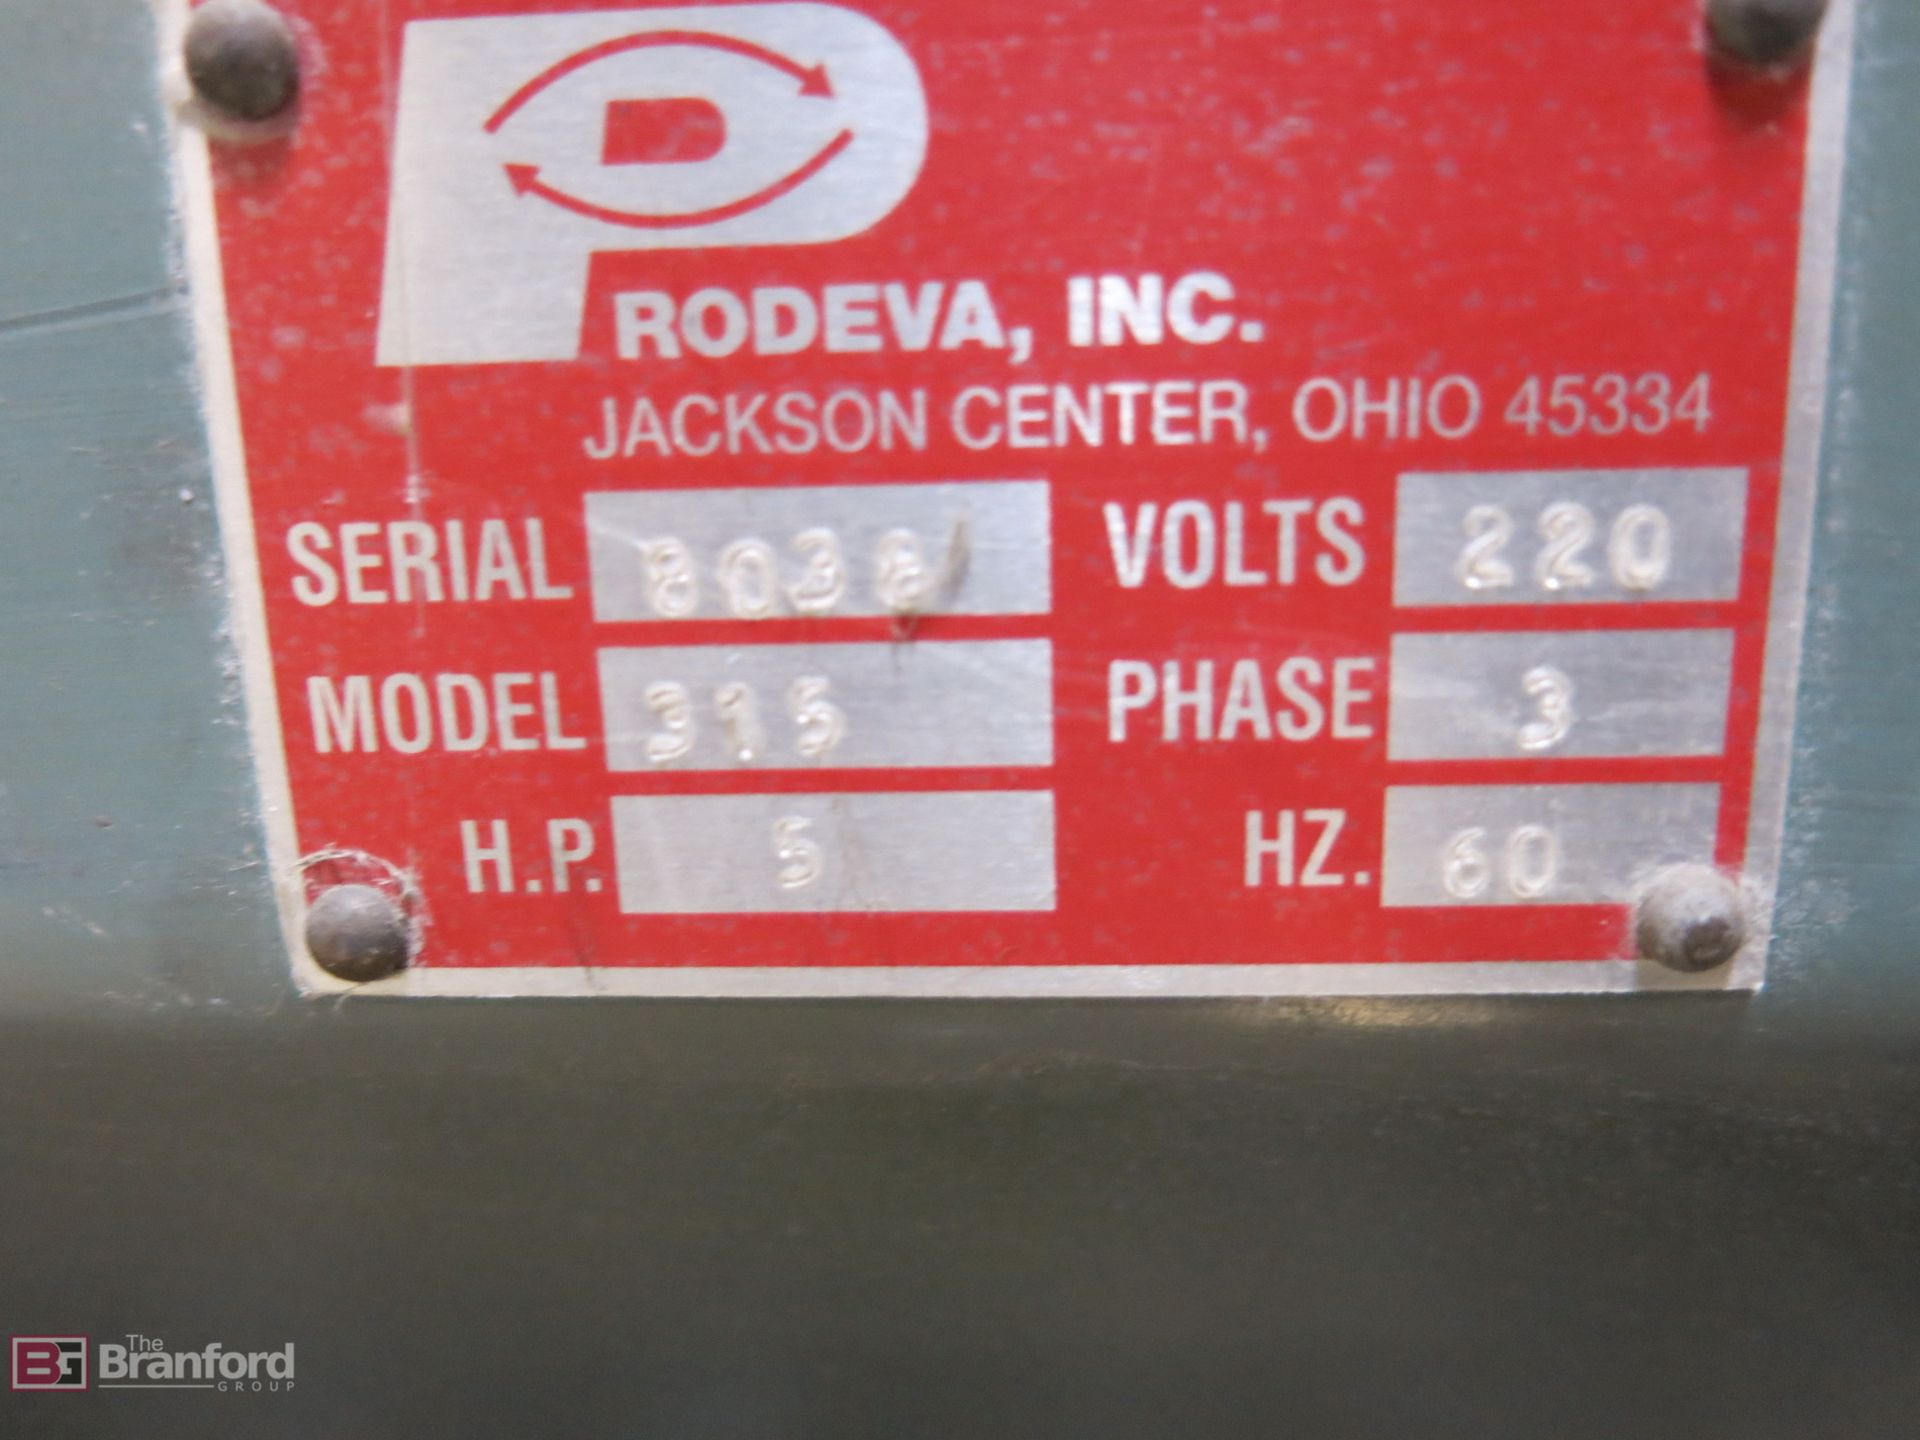 Prodeva Model 315 5-HP Glass Crusher - Image 2 of 3